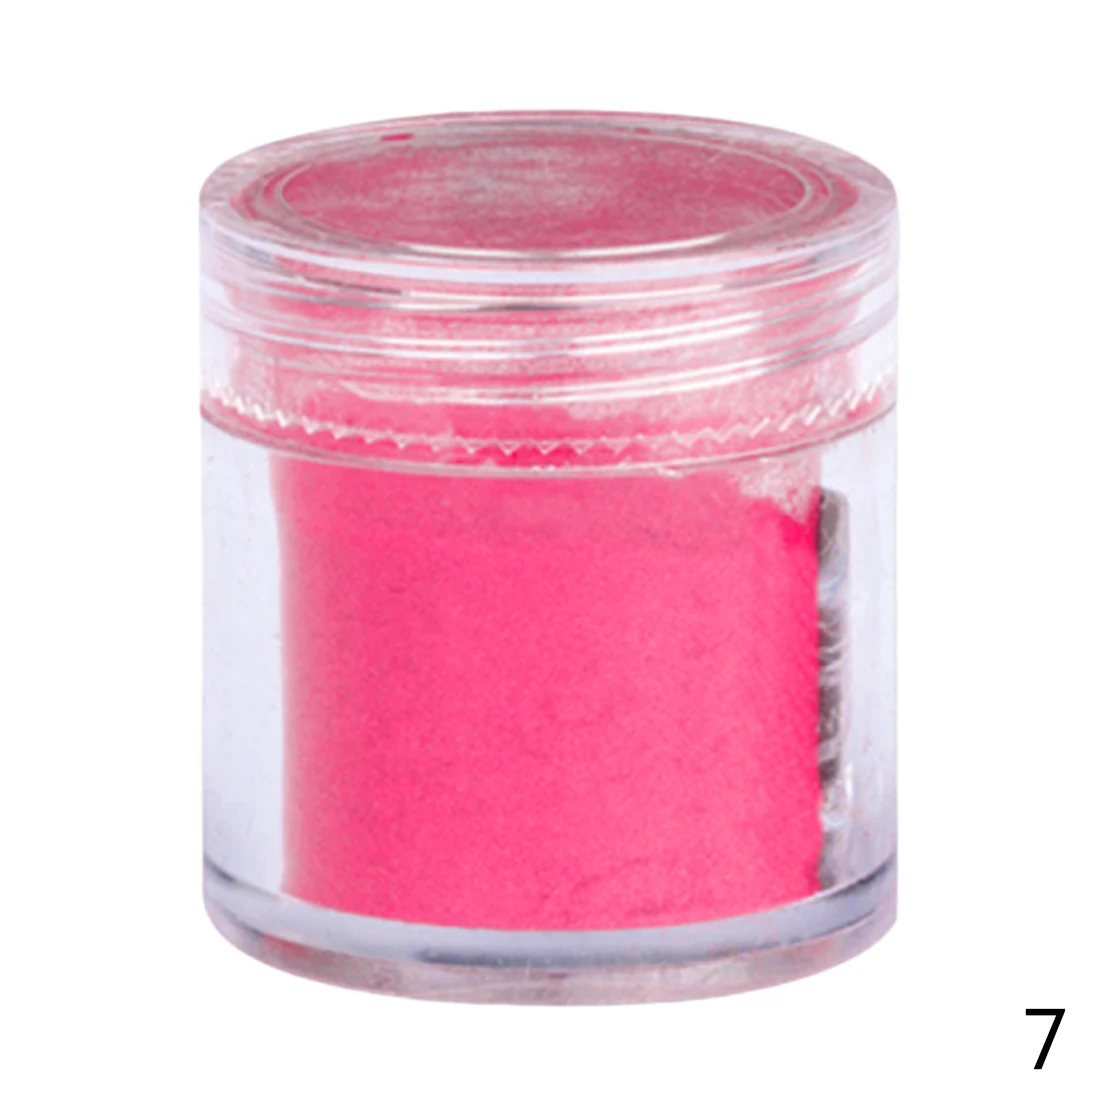 26 цветов DIY бархатный флокирующий порошок для бархатного маникюра, лак для ногтей, акриловые порошки жидкостей 10 г - Цвет: Rose Red